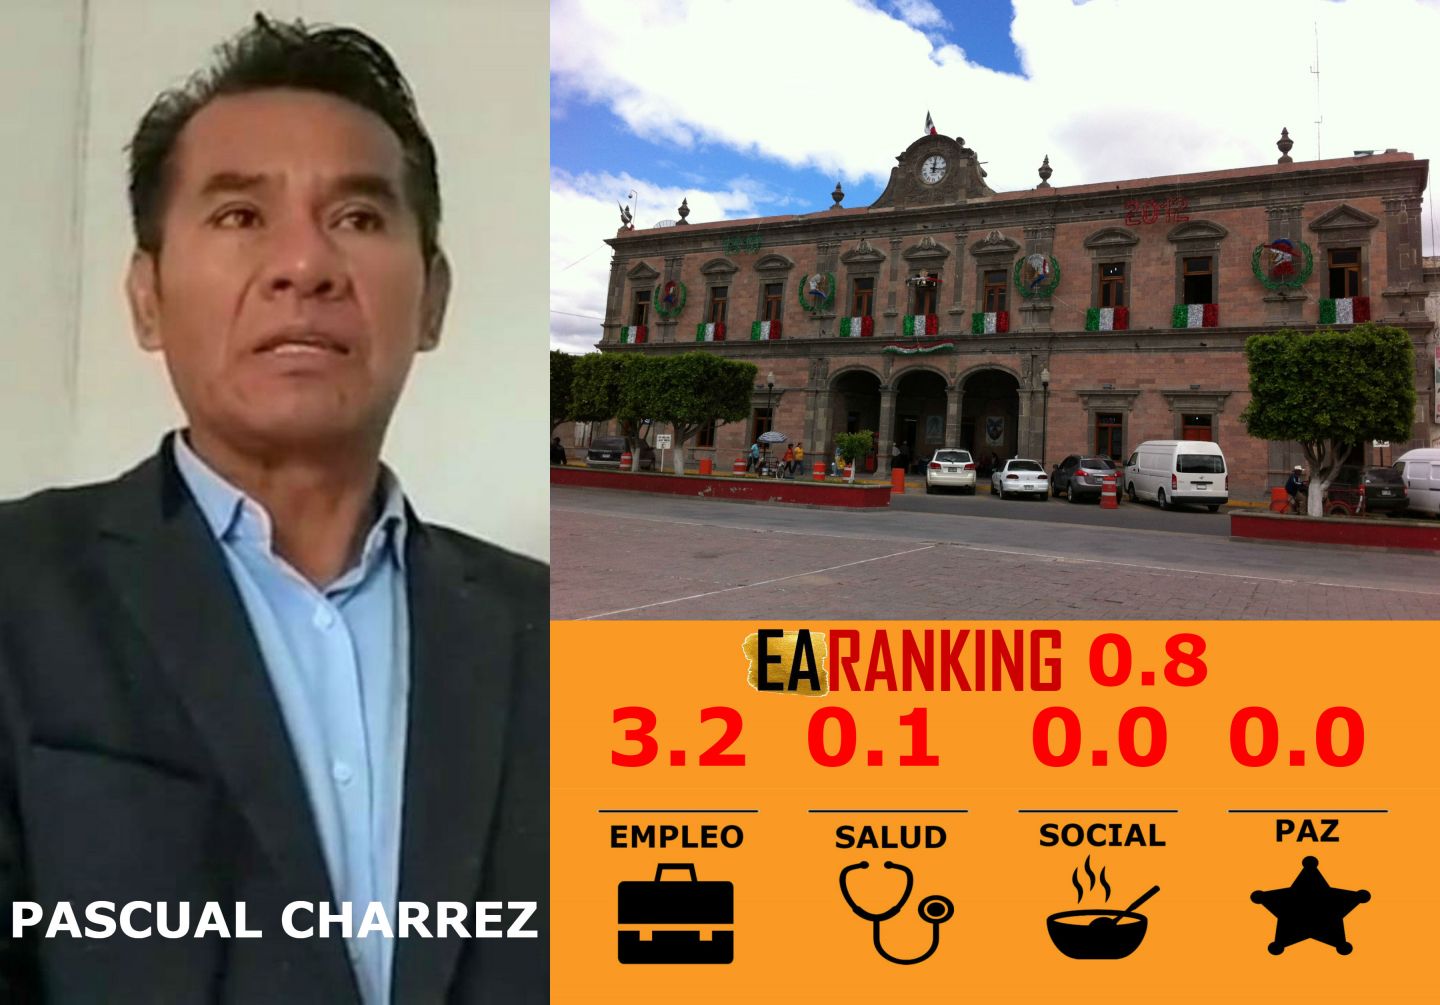 El de Ixmiquilpan es uno de los cinco peores alcaldes de Hidalgo: EARanking 2019